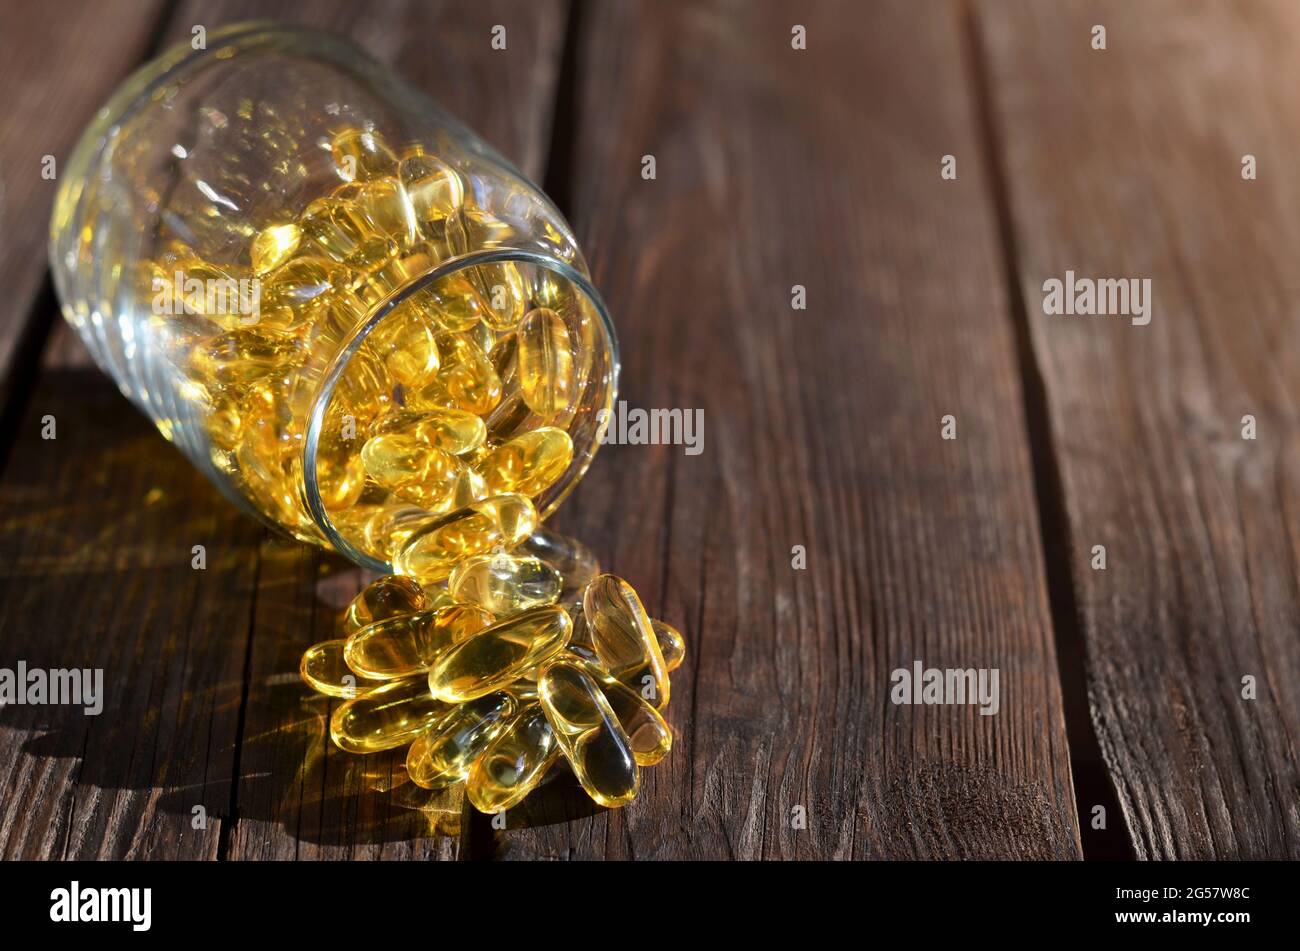 Vitamine für Gesundheit und Langlebigkeit in Form gelber Gelatinekapseln, die aus einem Glasgefäß auf einem Holztisch gestreut werden. Stockfoto